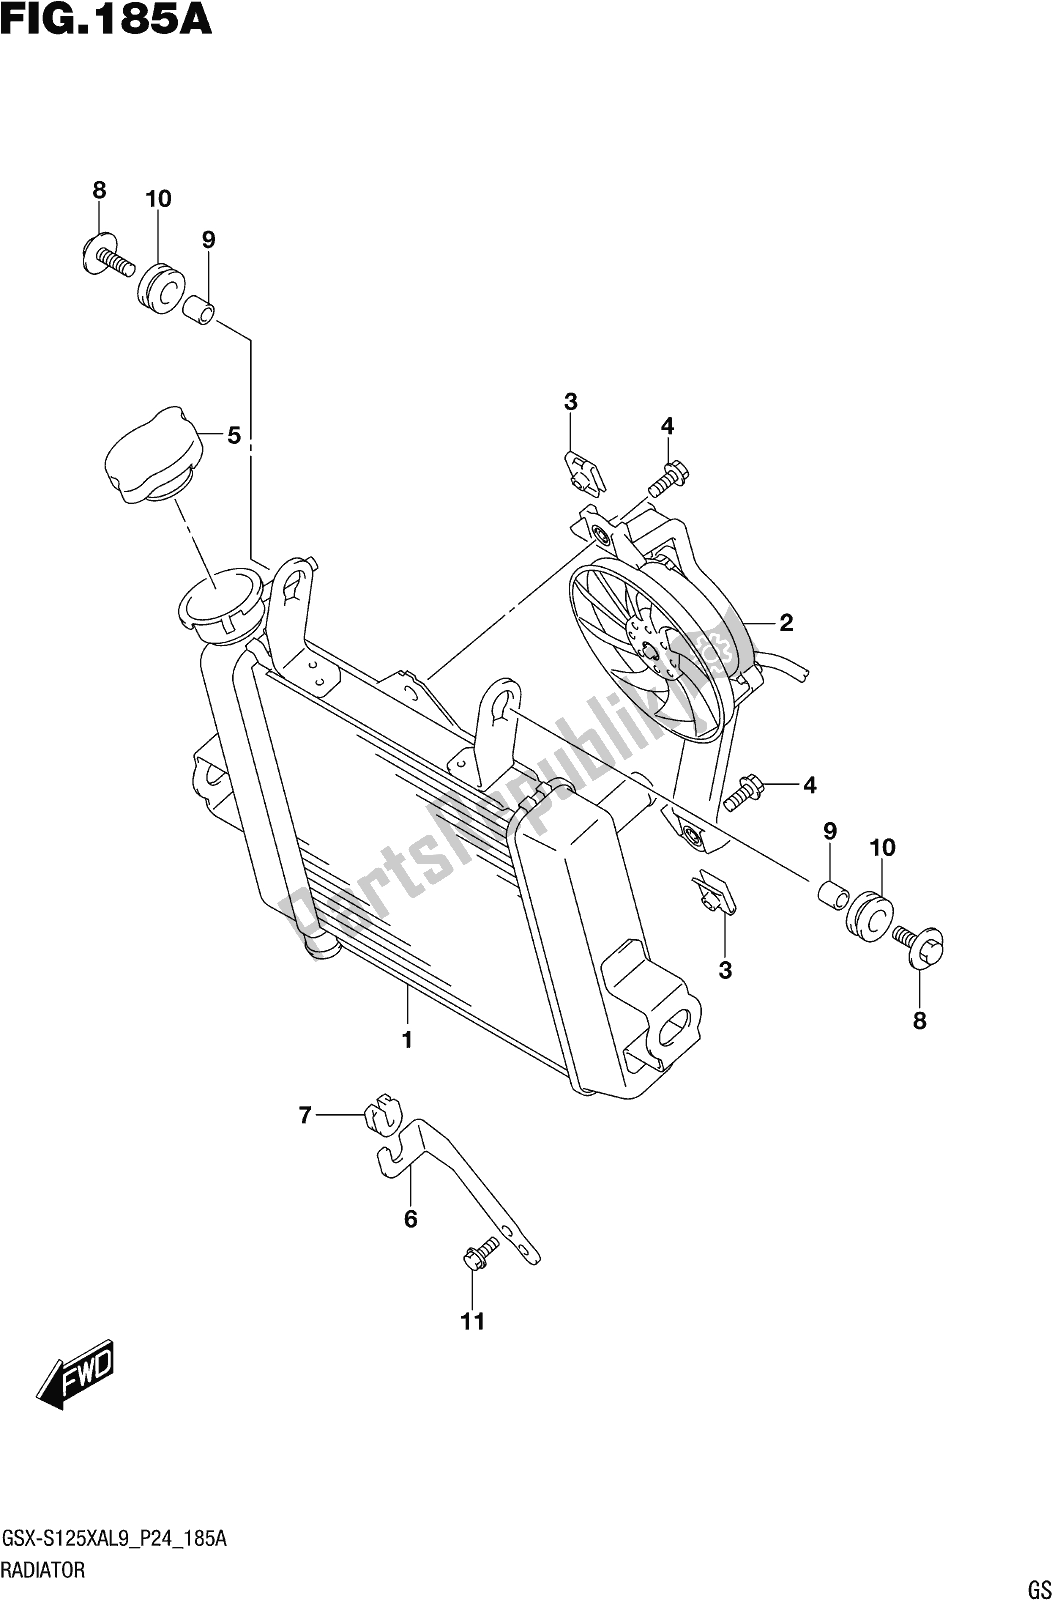 Toutes les pièces pour le Fig. 185a Radiator du Suzuki Gsx-s 125 XA 2019